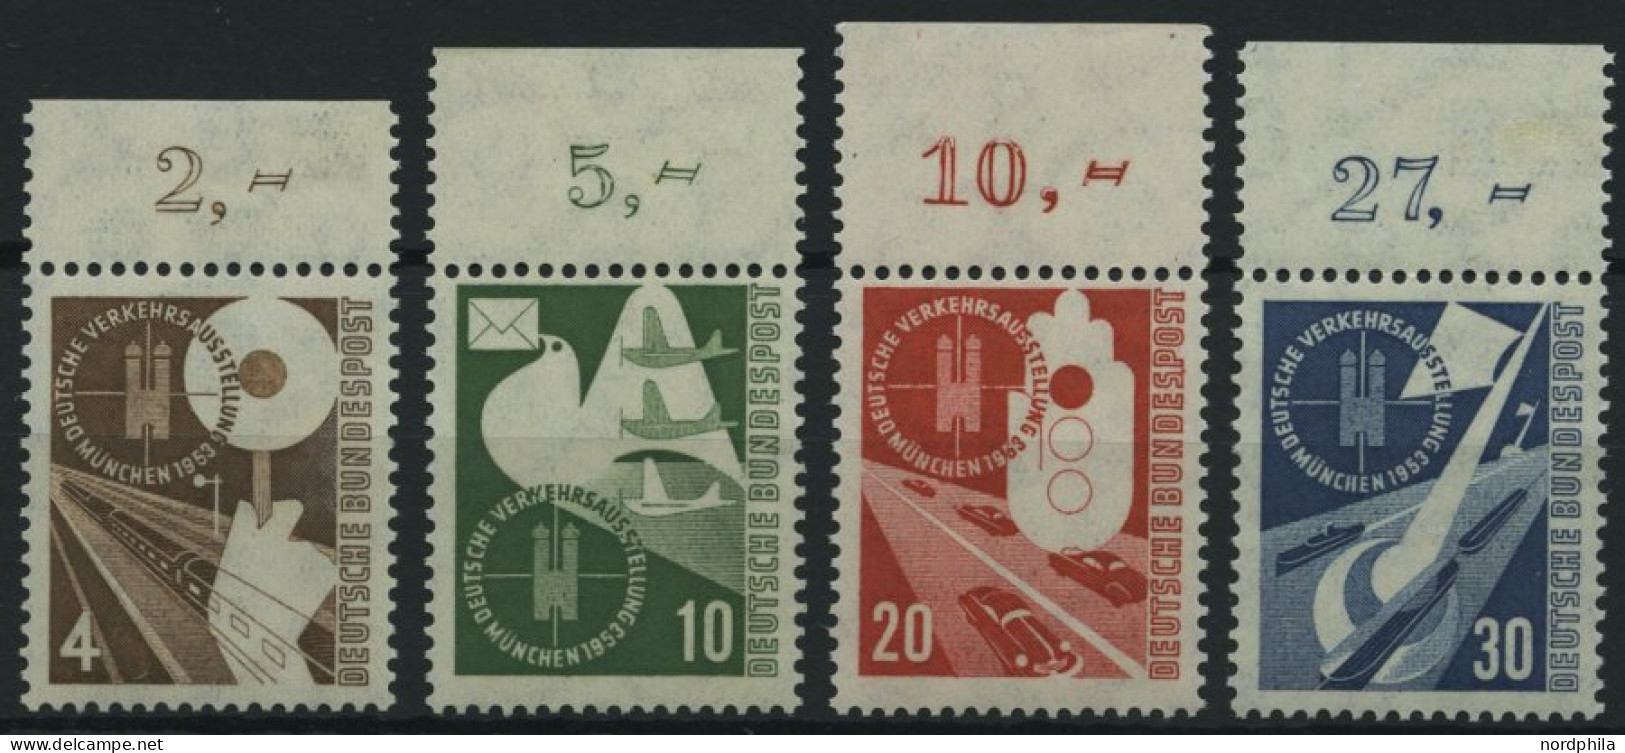 BUNDESREPUBLIK 167-70 , 1953, Verkehrsausstellung, Oberrandstücke, Prachtsatz - Unused Stamps